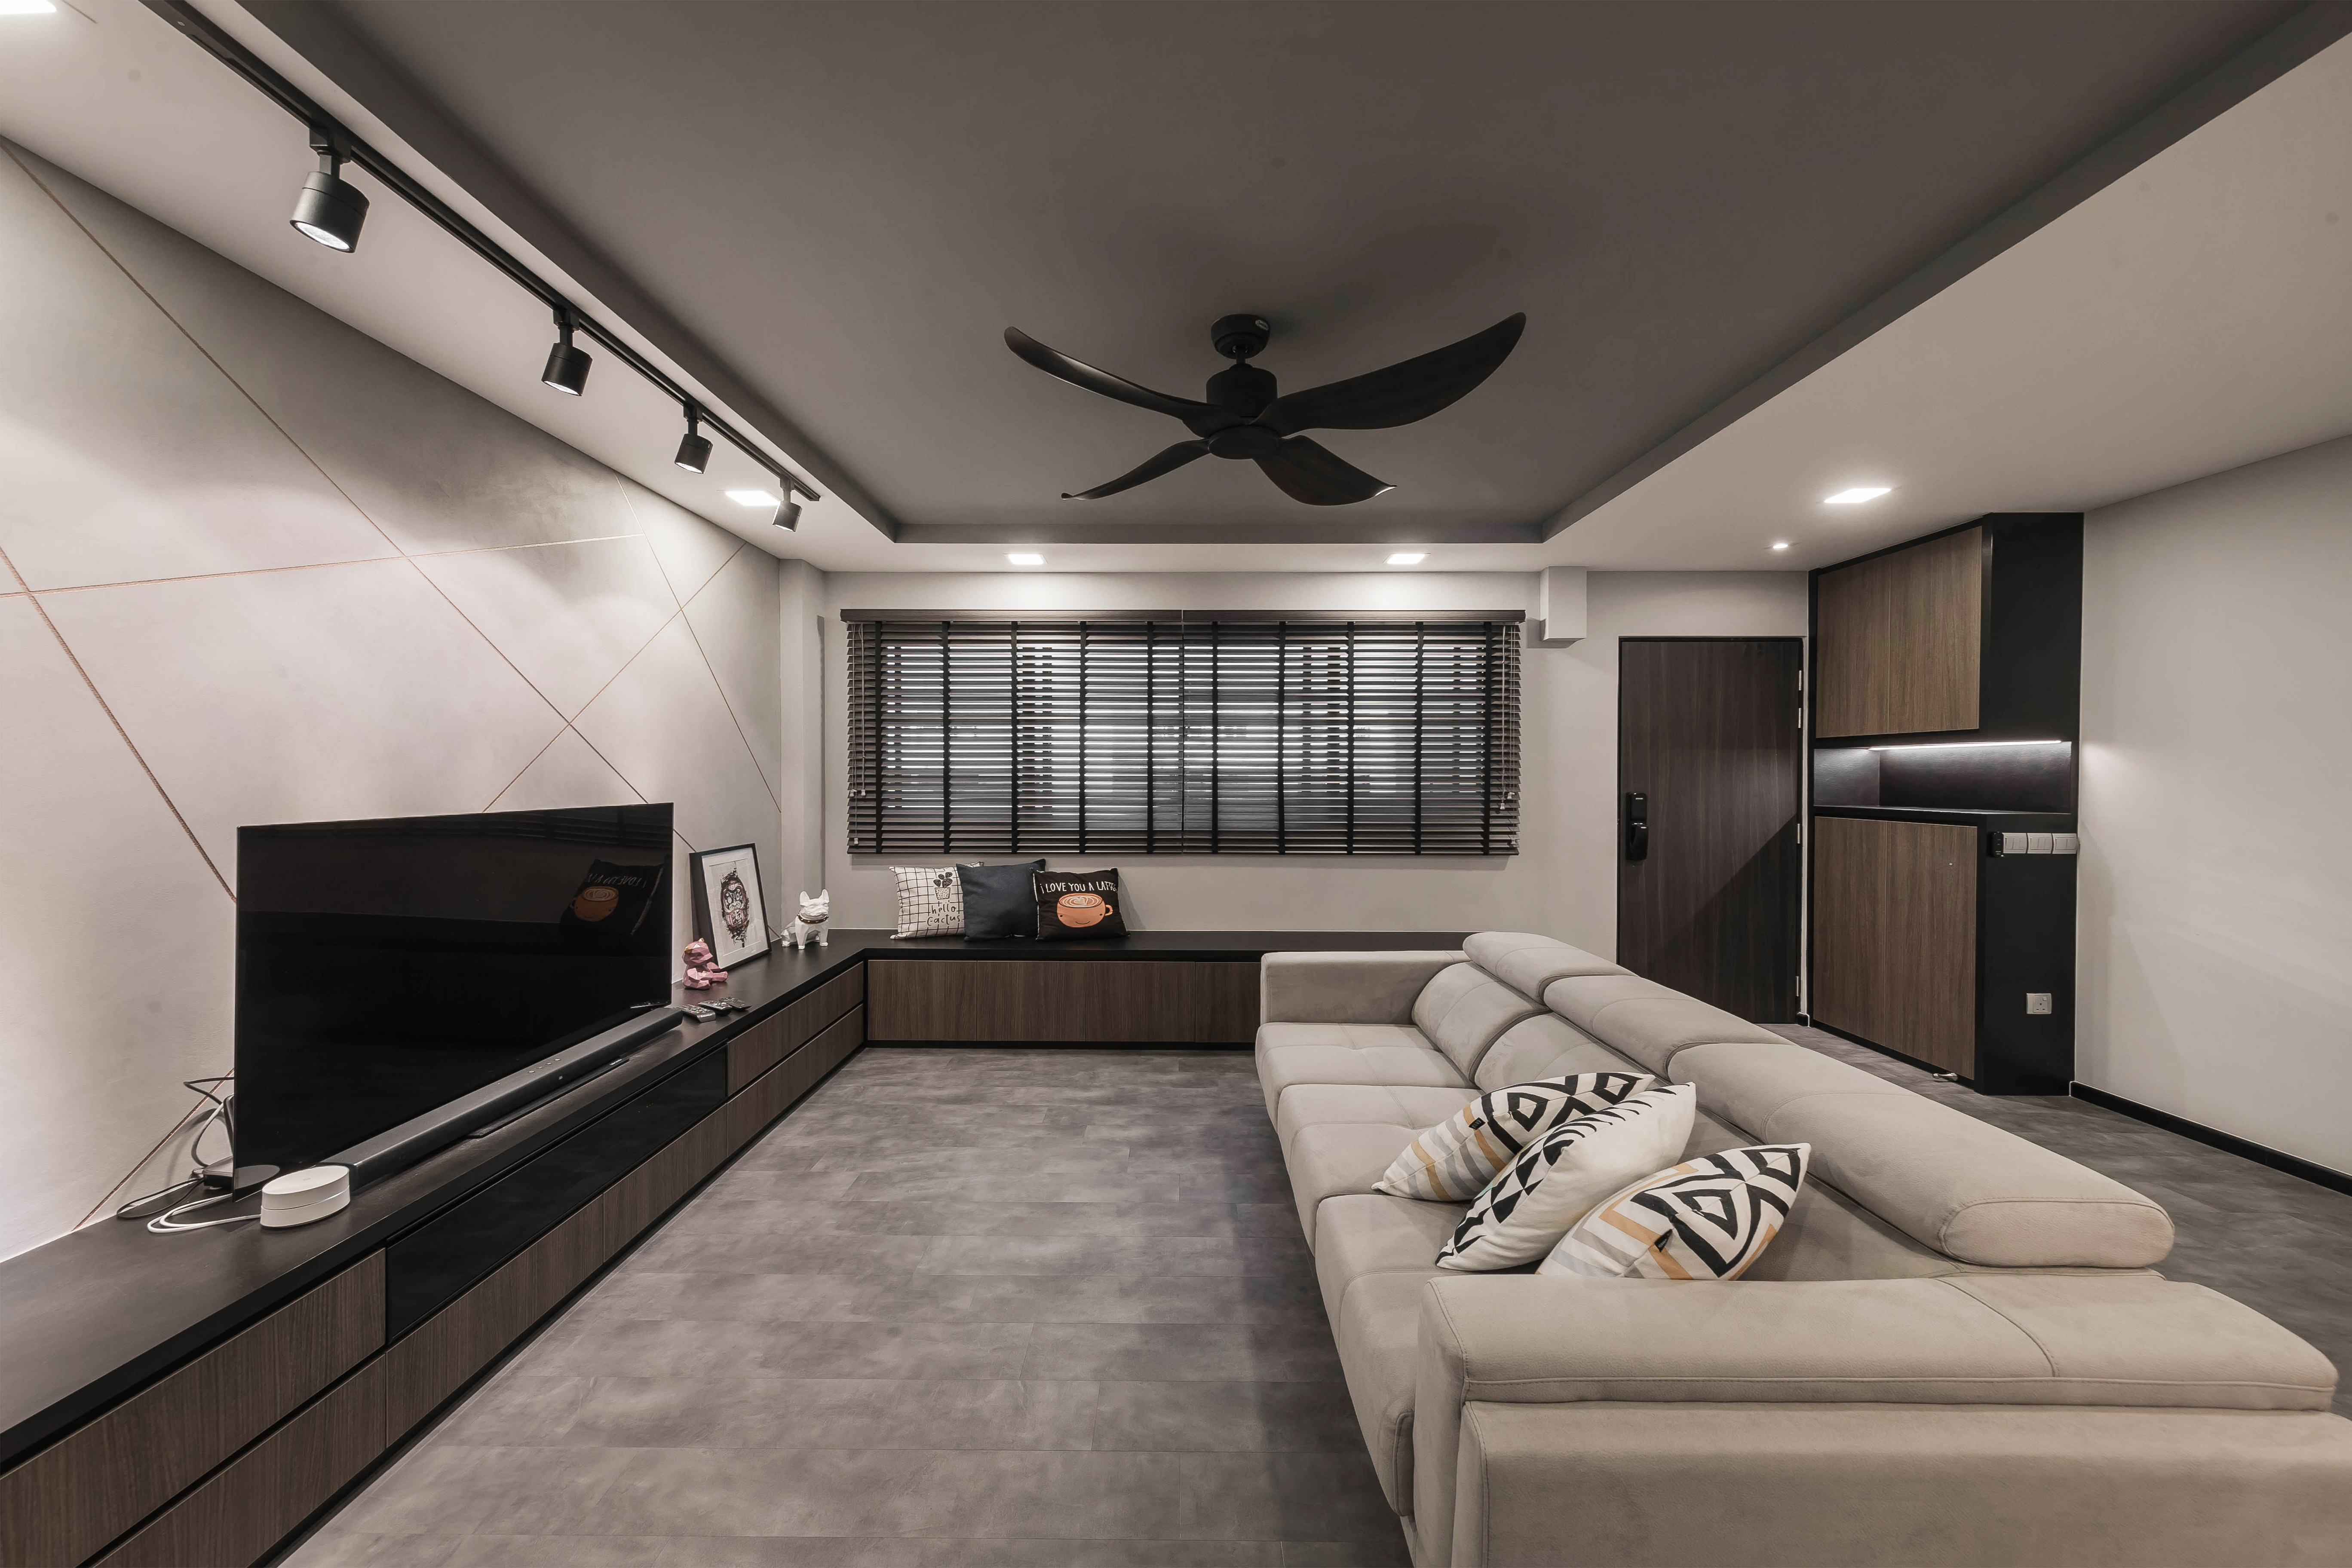 Industrial, Modern Design - Kitchen - HDB 4 Room - Design by Renozone Interior Design House